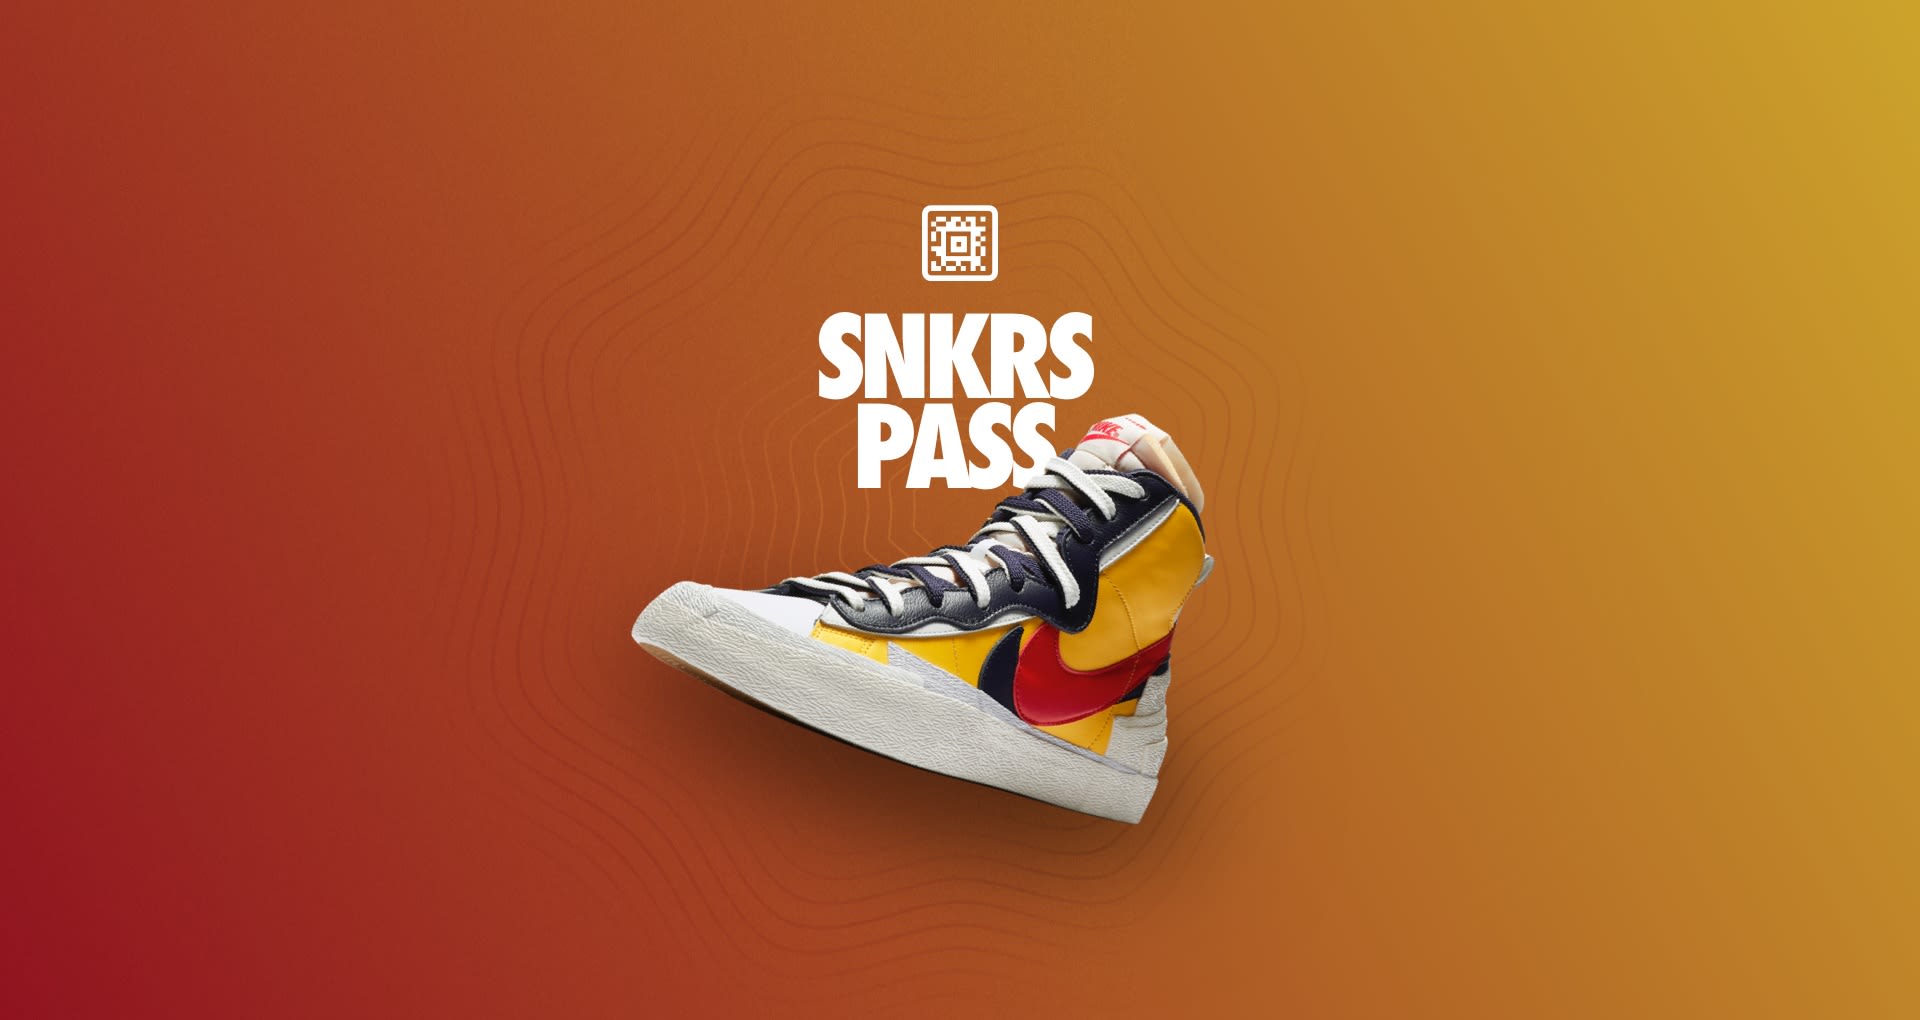 SNKRS Pass: Blazer Mid 'Sacai' NYC. Nike SNKRS